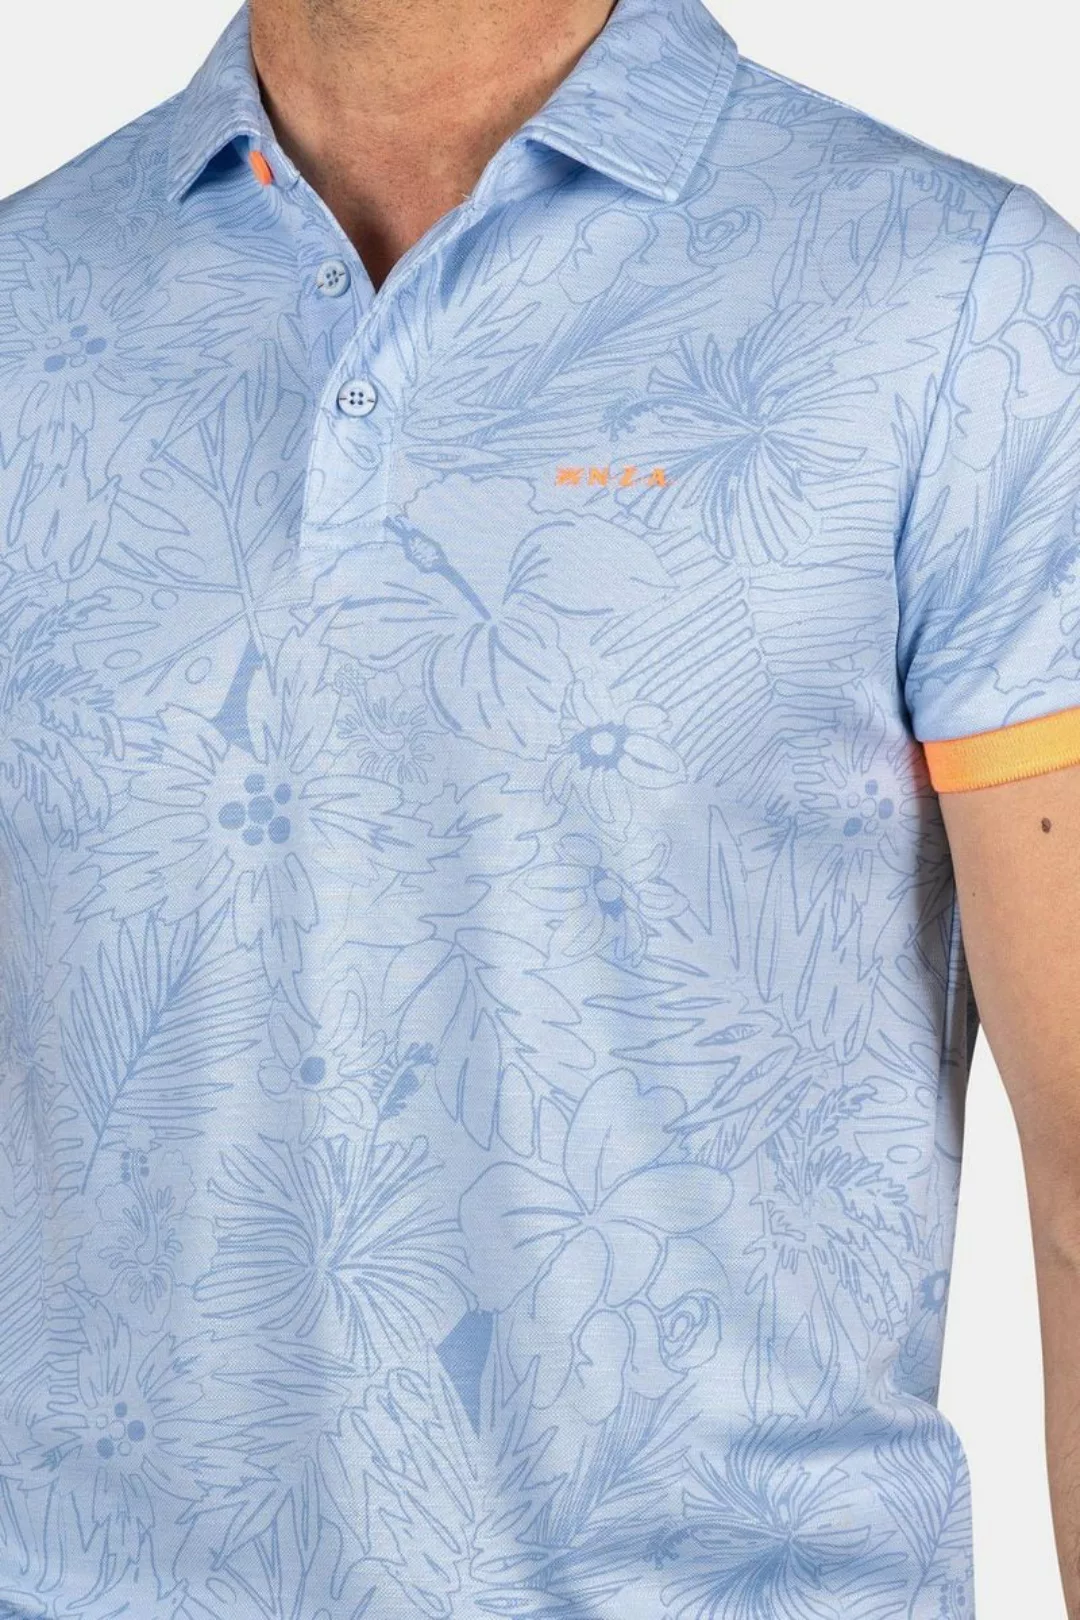 NZA Poloshirt Blake Hellblau - Größe M günstig online kaufen